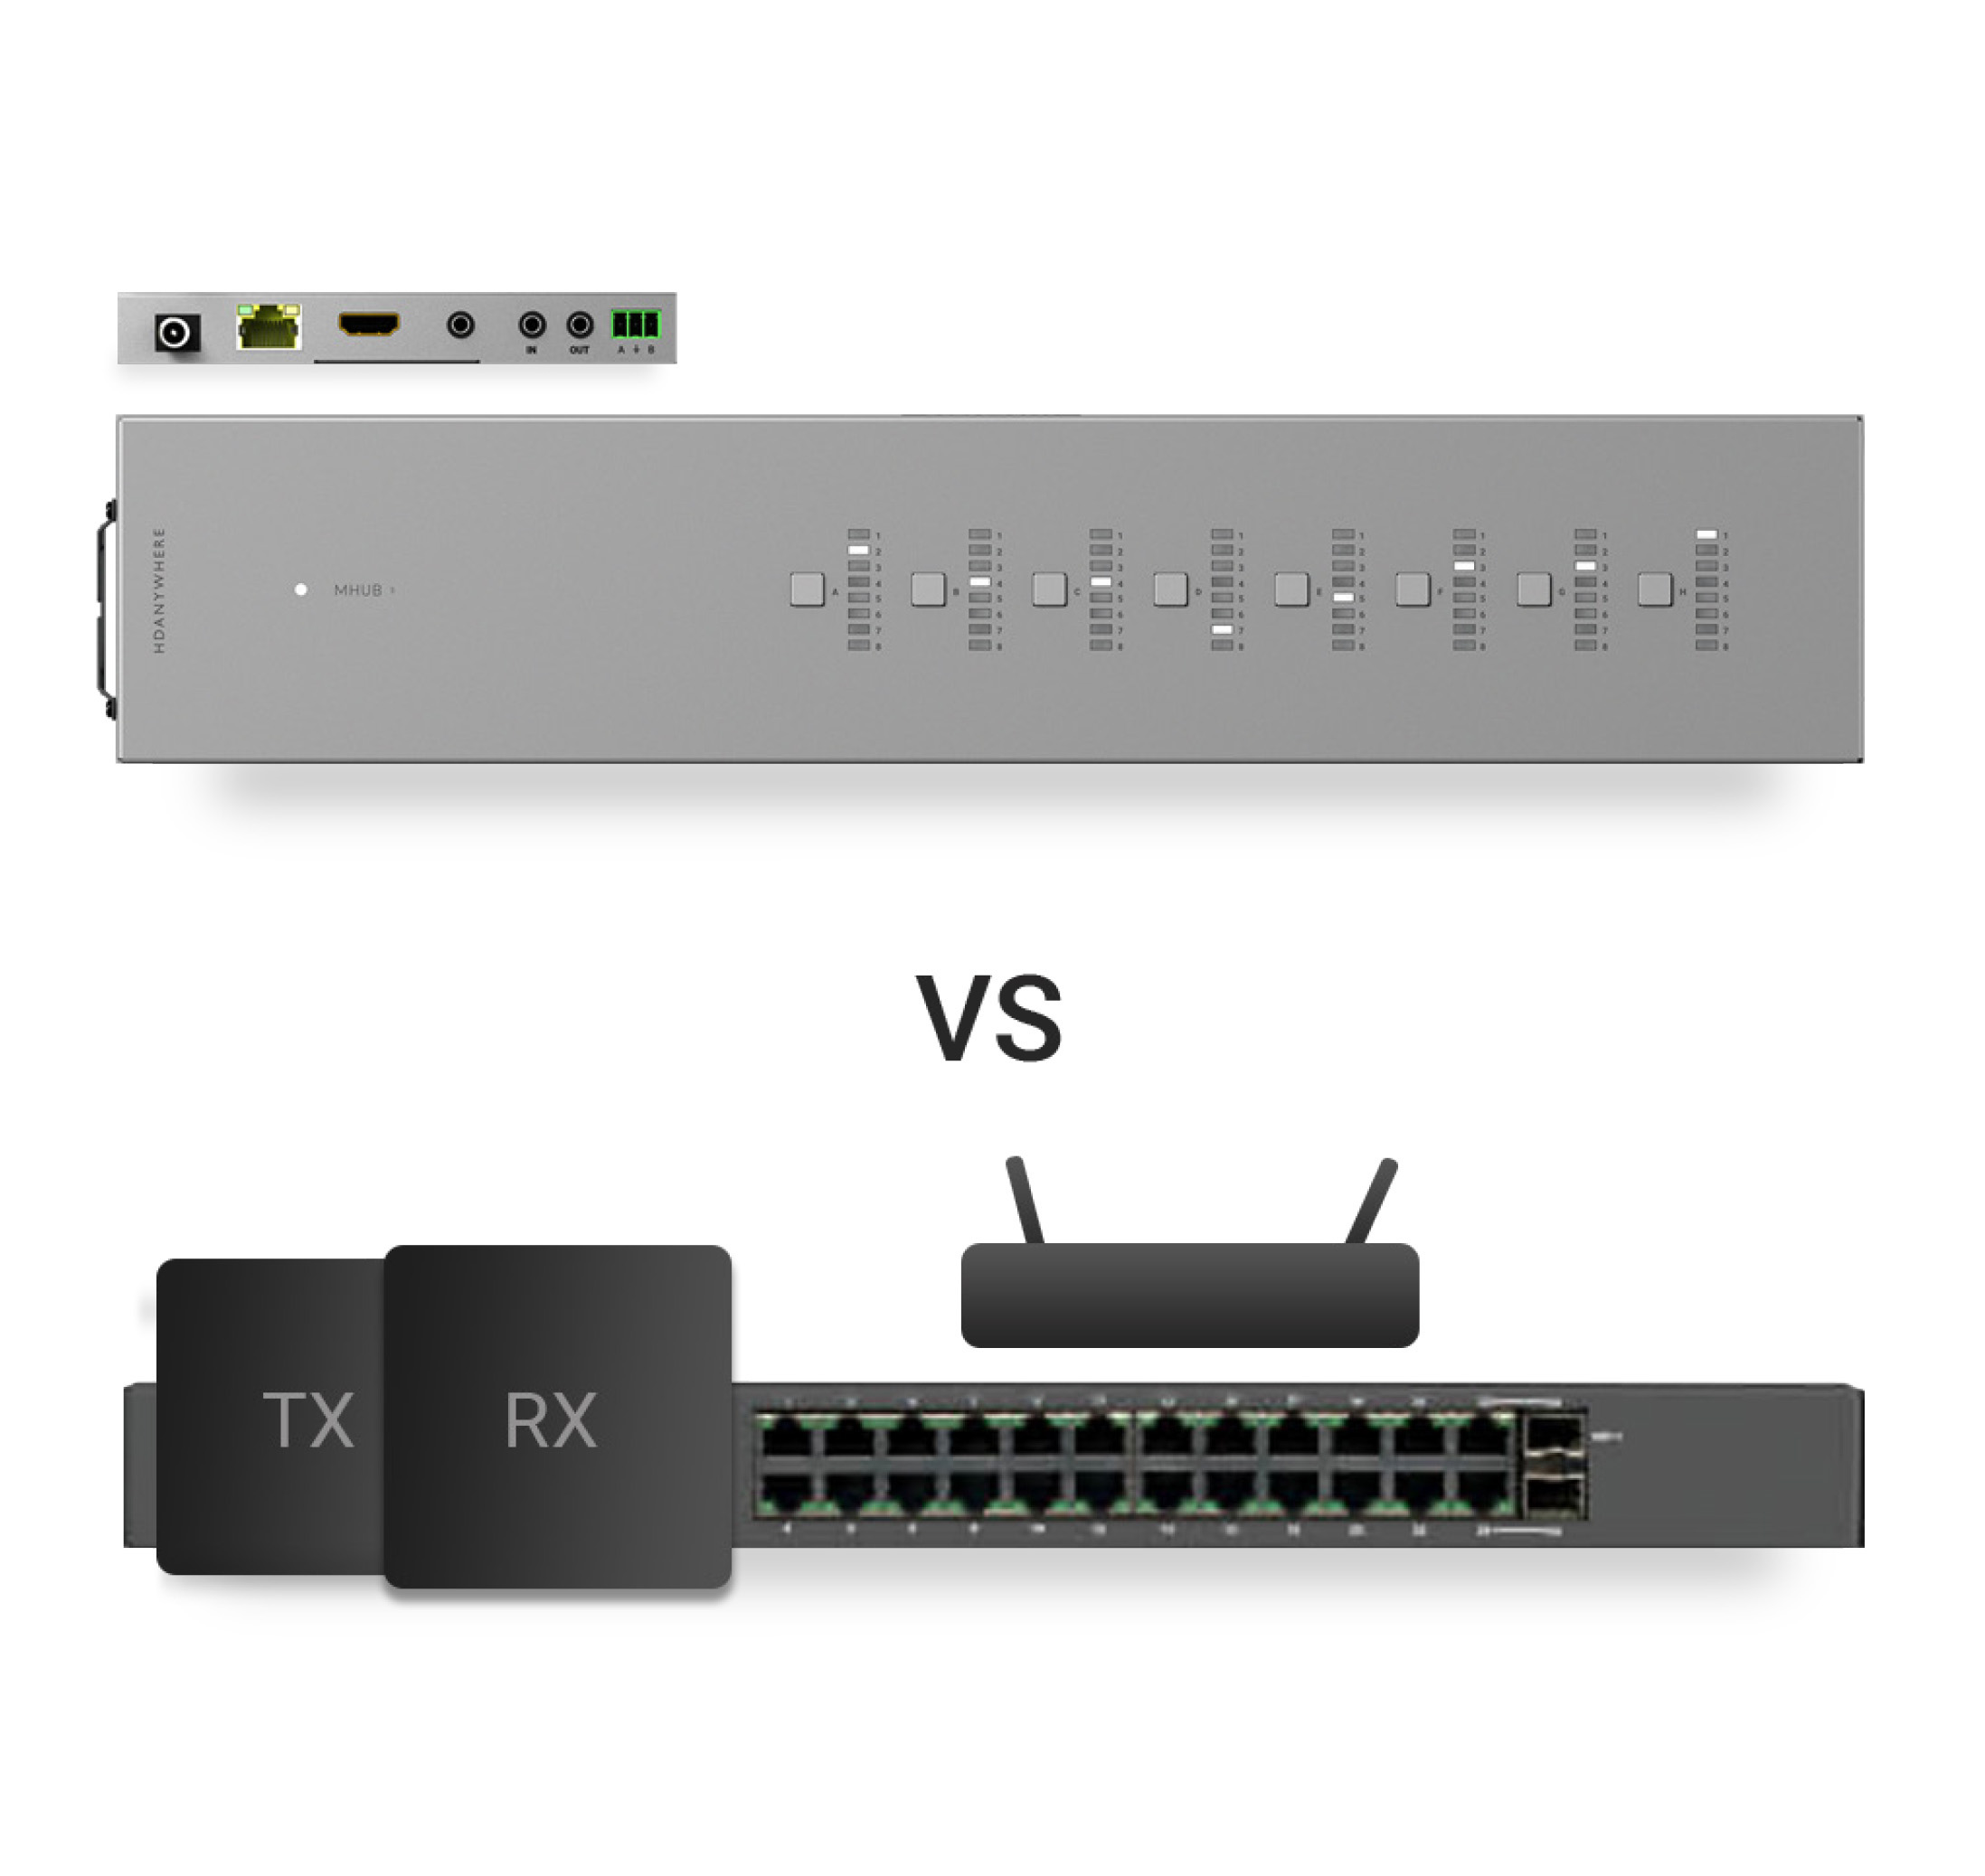 MHUB S vs AV over IP